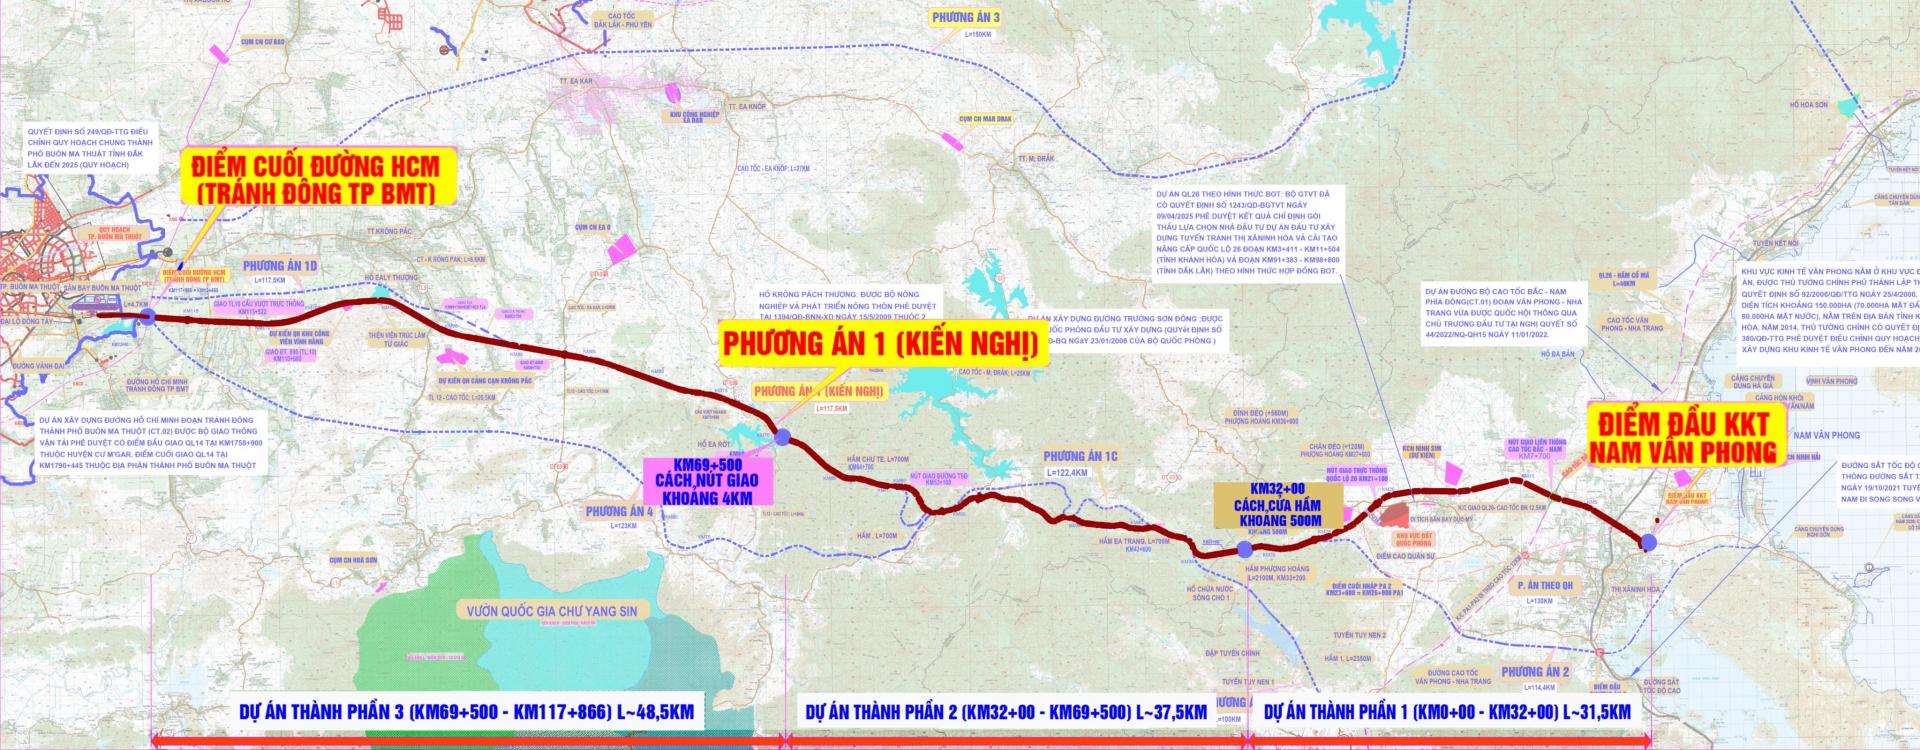 Tuyến cao tốc Khánh Hòa - Buôn Ma Thuột sẽ chính thức đi vào hoạt động vào năm 2024! Tận hưởng sự tiện lợi và nhanh chóng khi di chuyển từ Khánh Hòa đến Buôn Ma Thuột, đồng thời tận hưởng cảnh quan tuyệt đẹp vùng đồi núi trên đường đi.